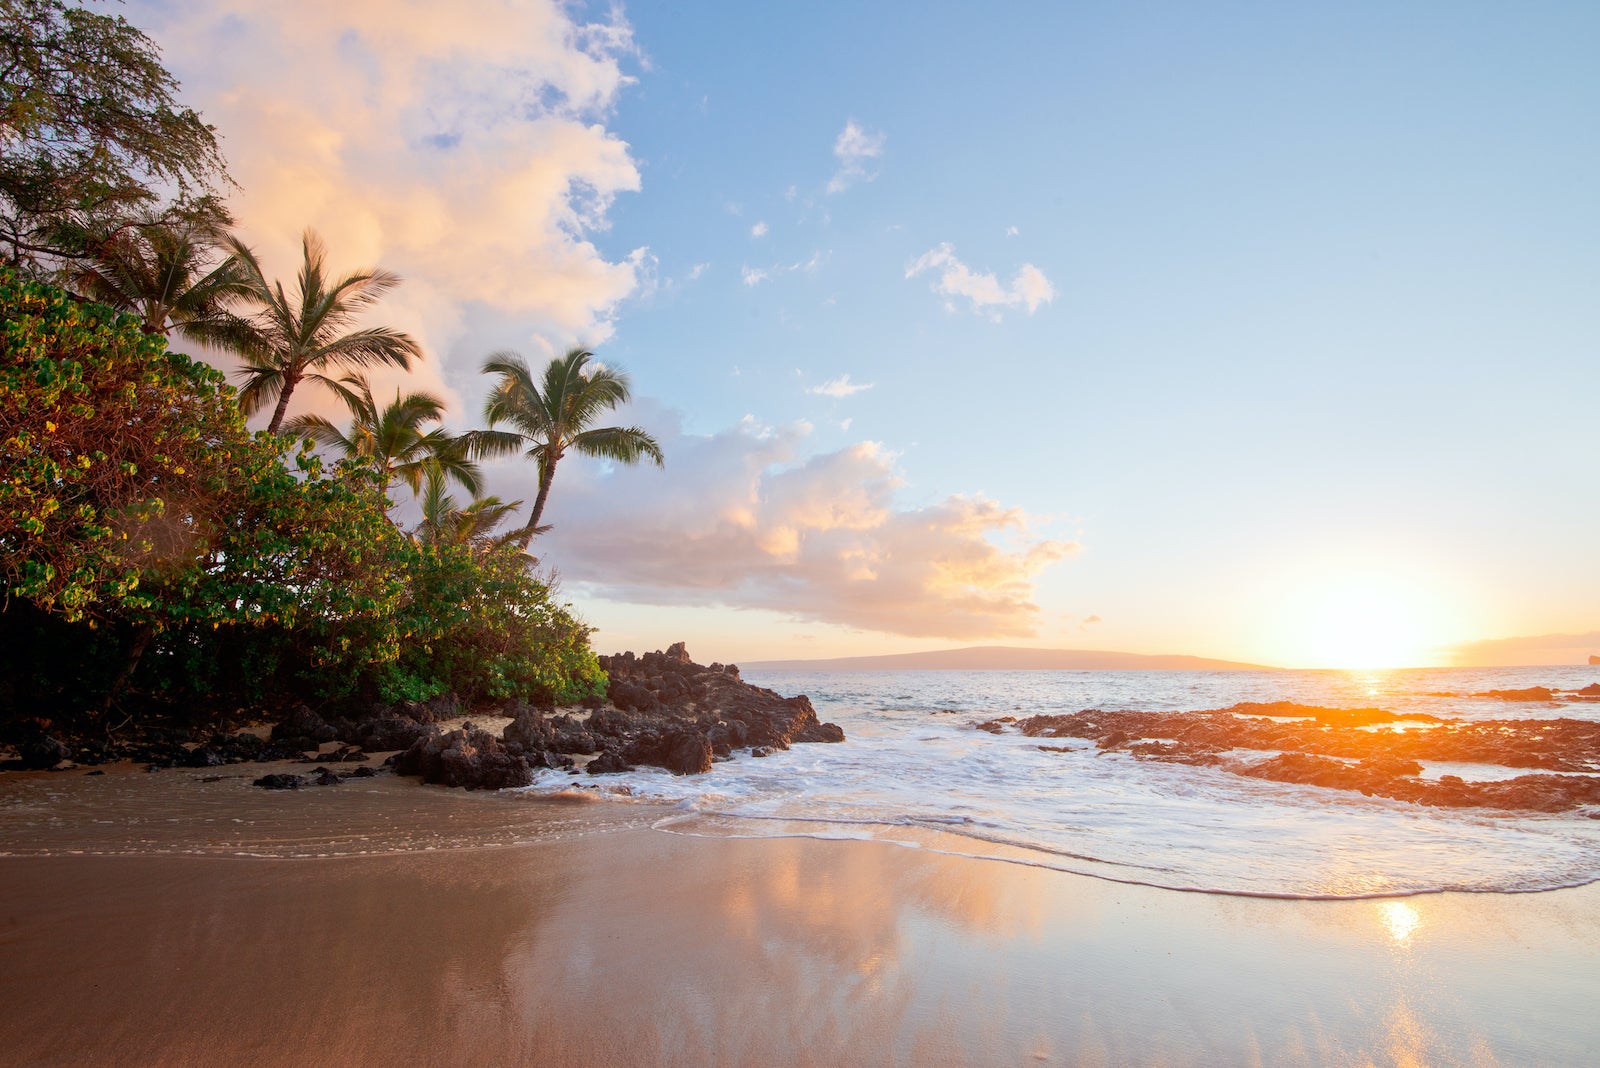 Sunset on a Hawaii beach